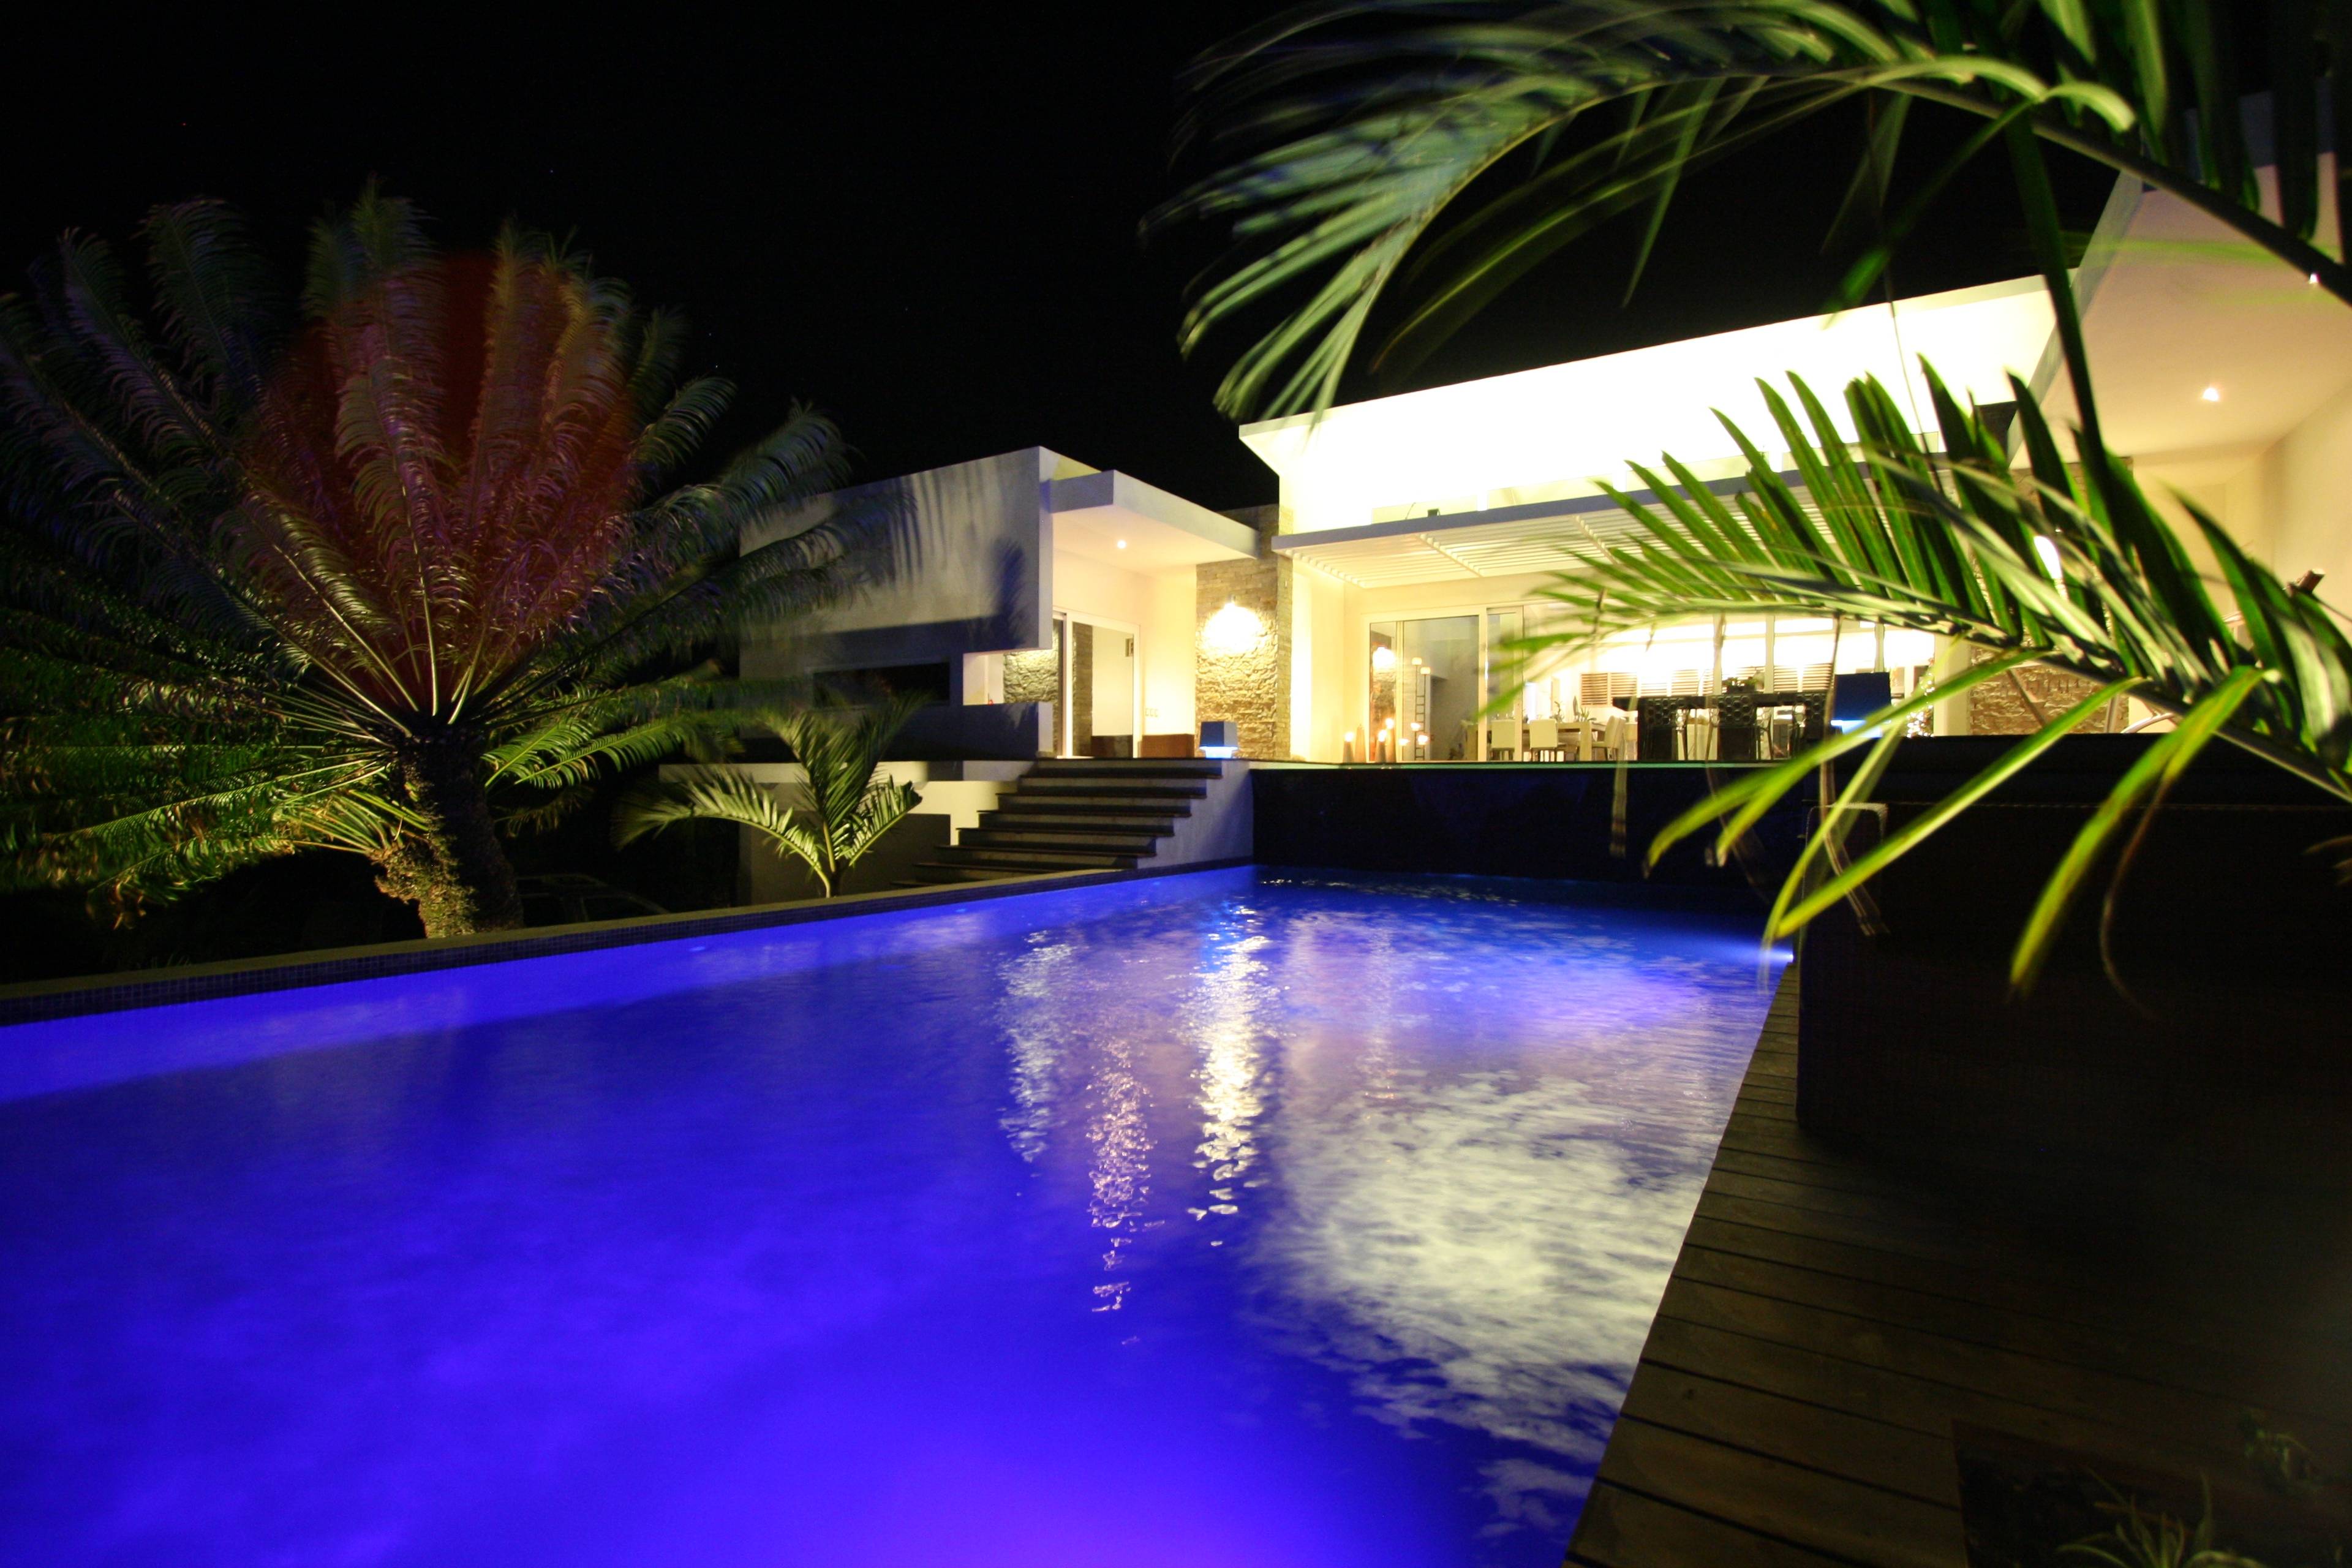 Two Bedroom Boutique-Style Contemporary Villas in Cabarete, Dominican Republic!